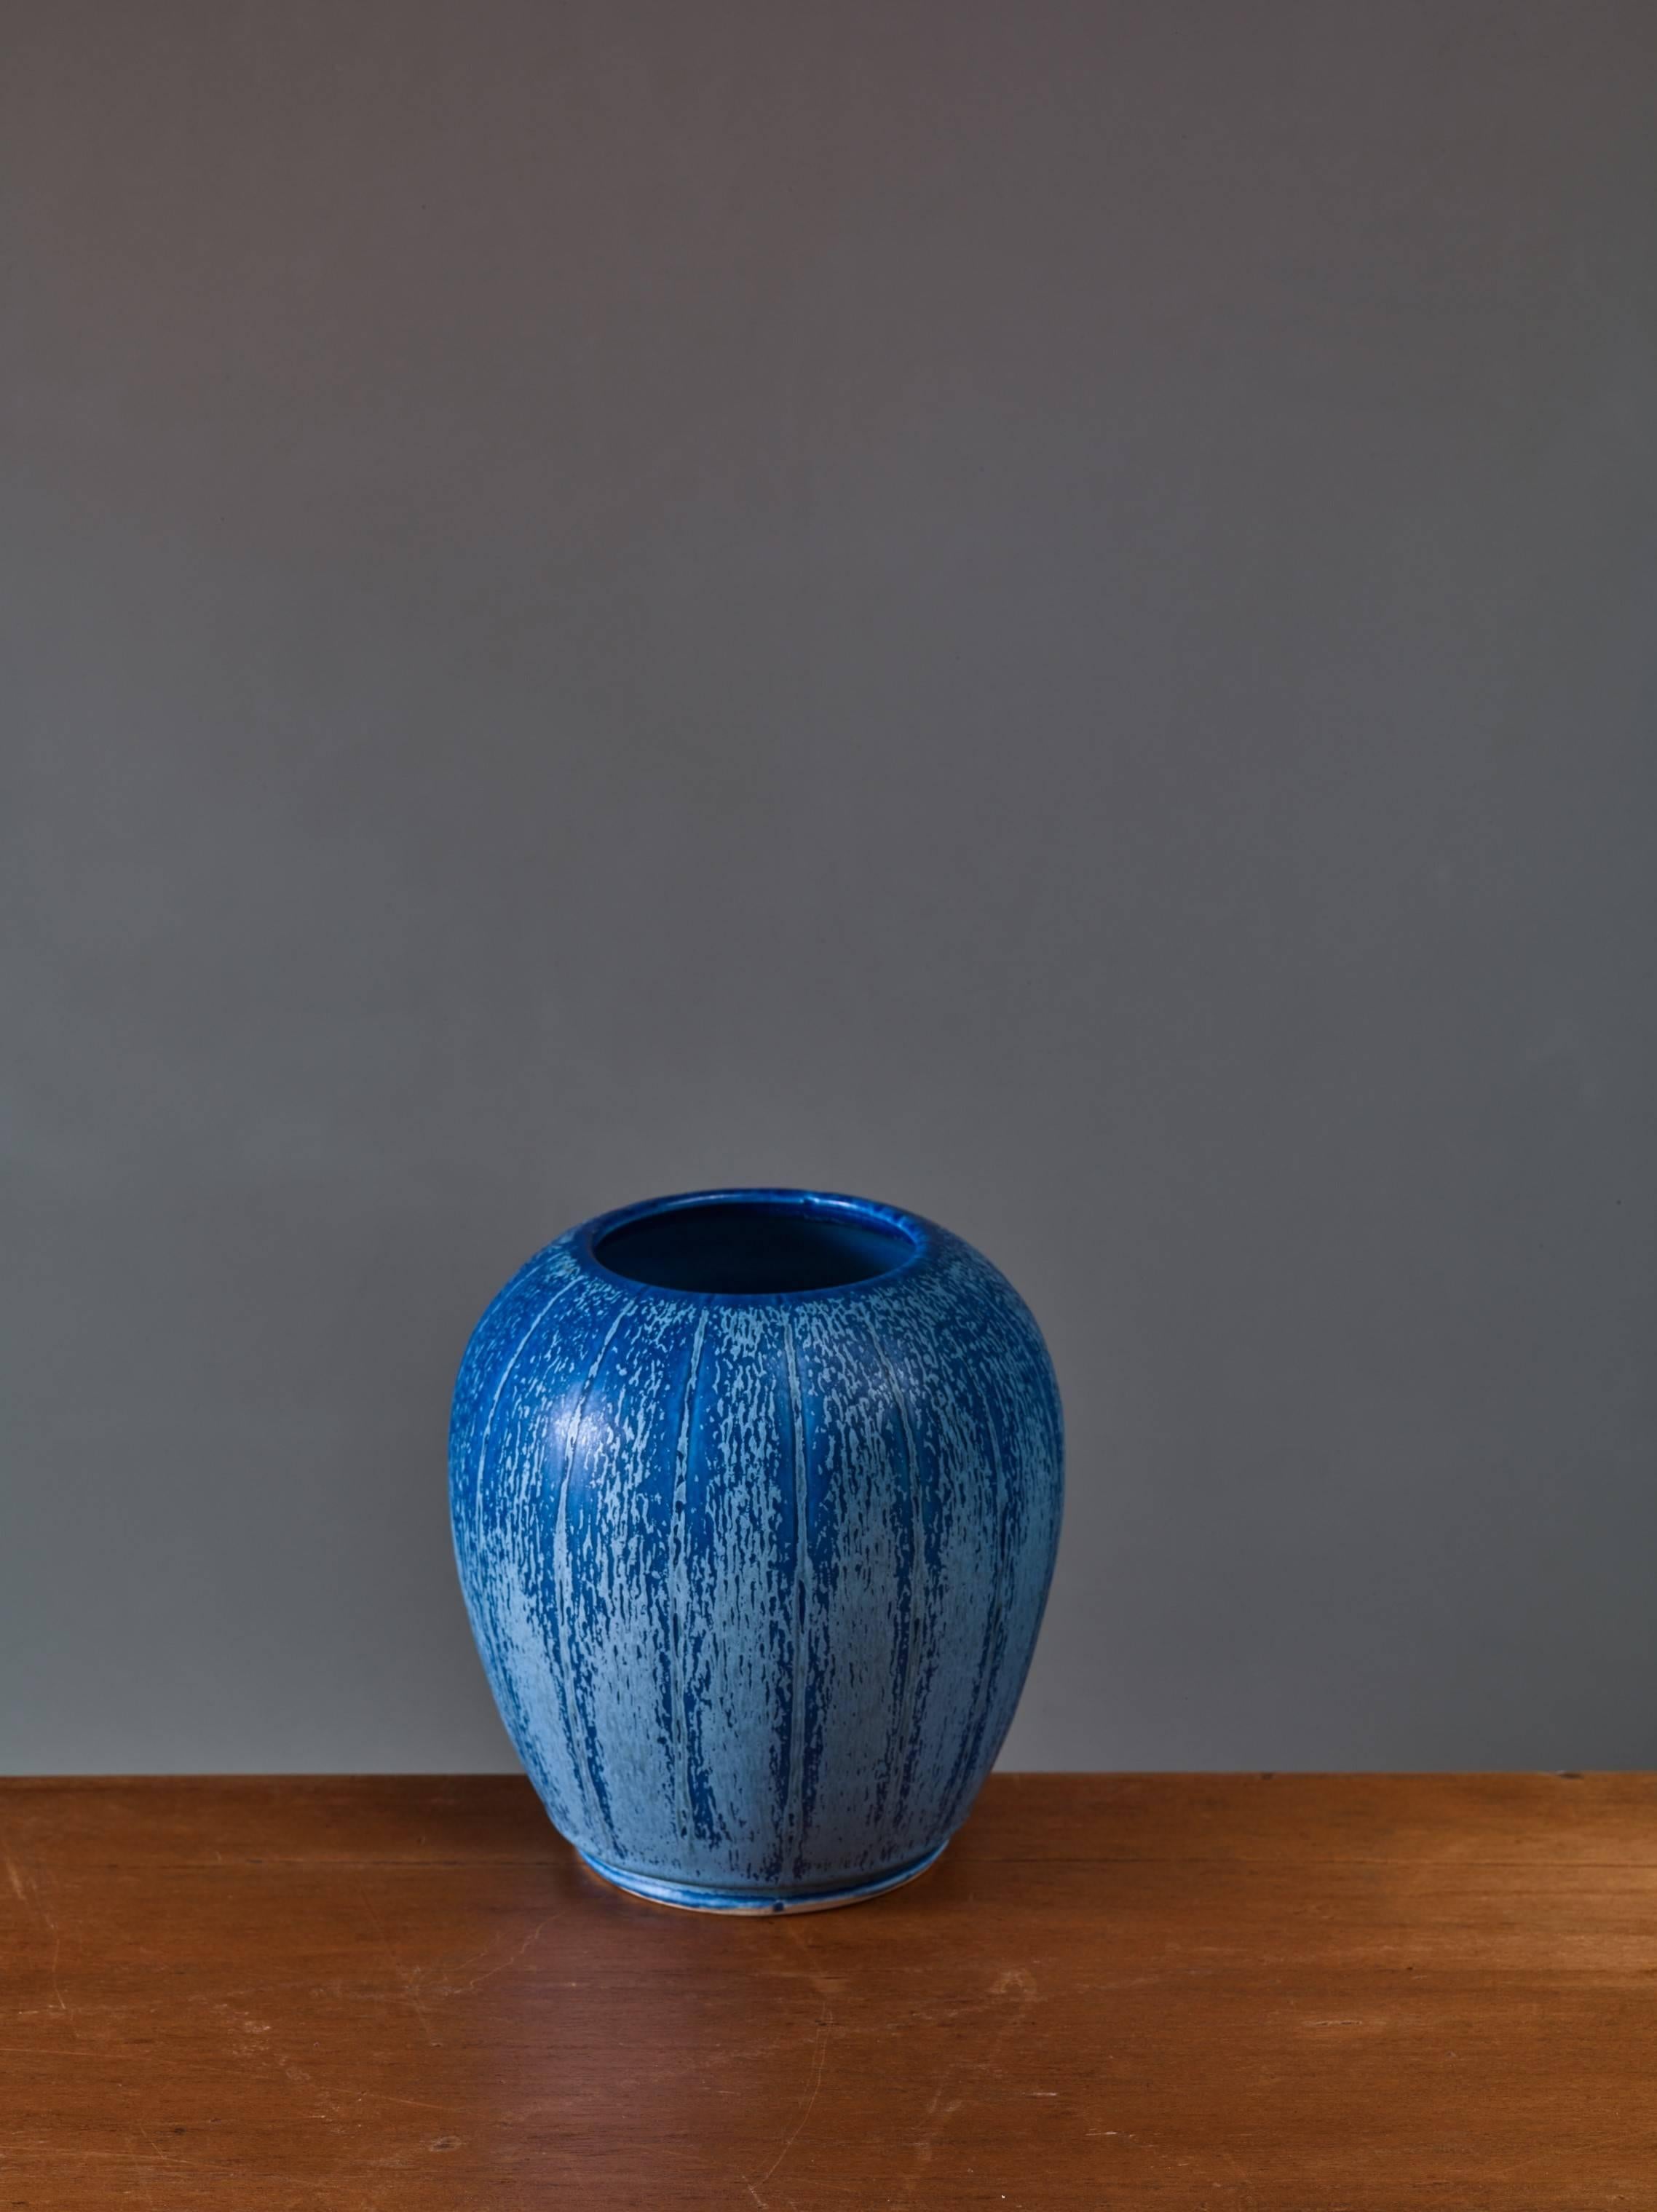 A ceramic vase by Eva Jancke-Björk for Bo Fajans, 1948-1951.
The vase has incised stripes and glaze in blues. Eva Jancke-Björk for Bo Fajans,
Marked “3547-40” and with overglazed Bo Fajans logo.